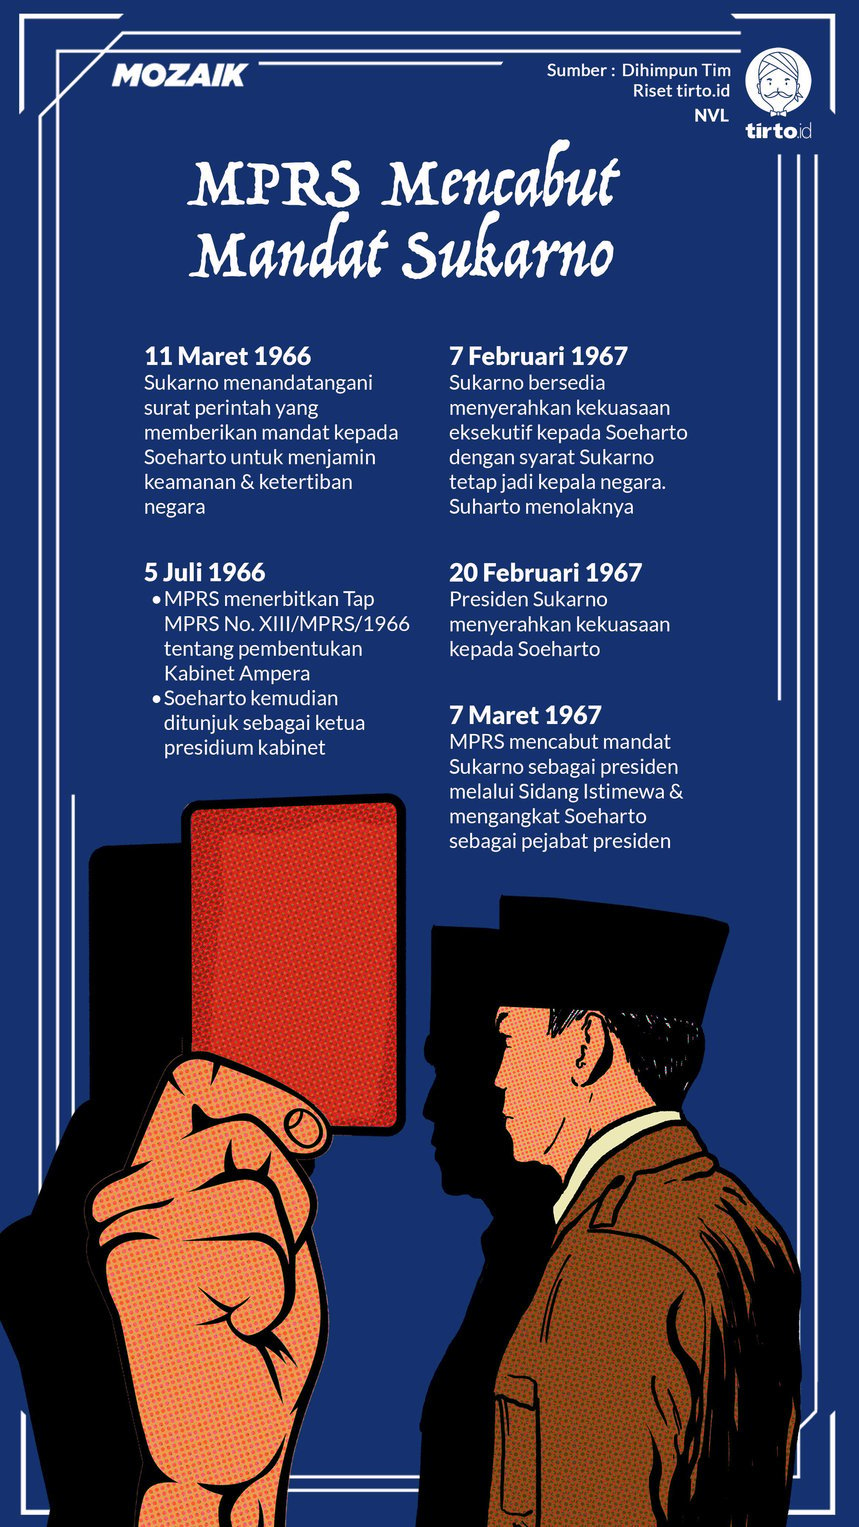 Infografik Mozaik Mencabut Mandat Sukarno